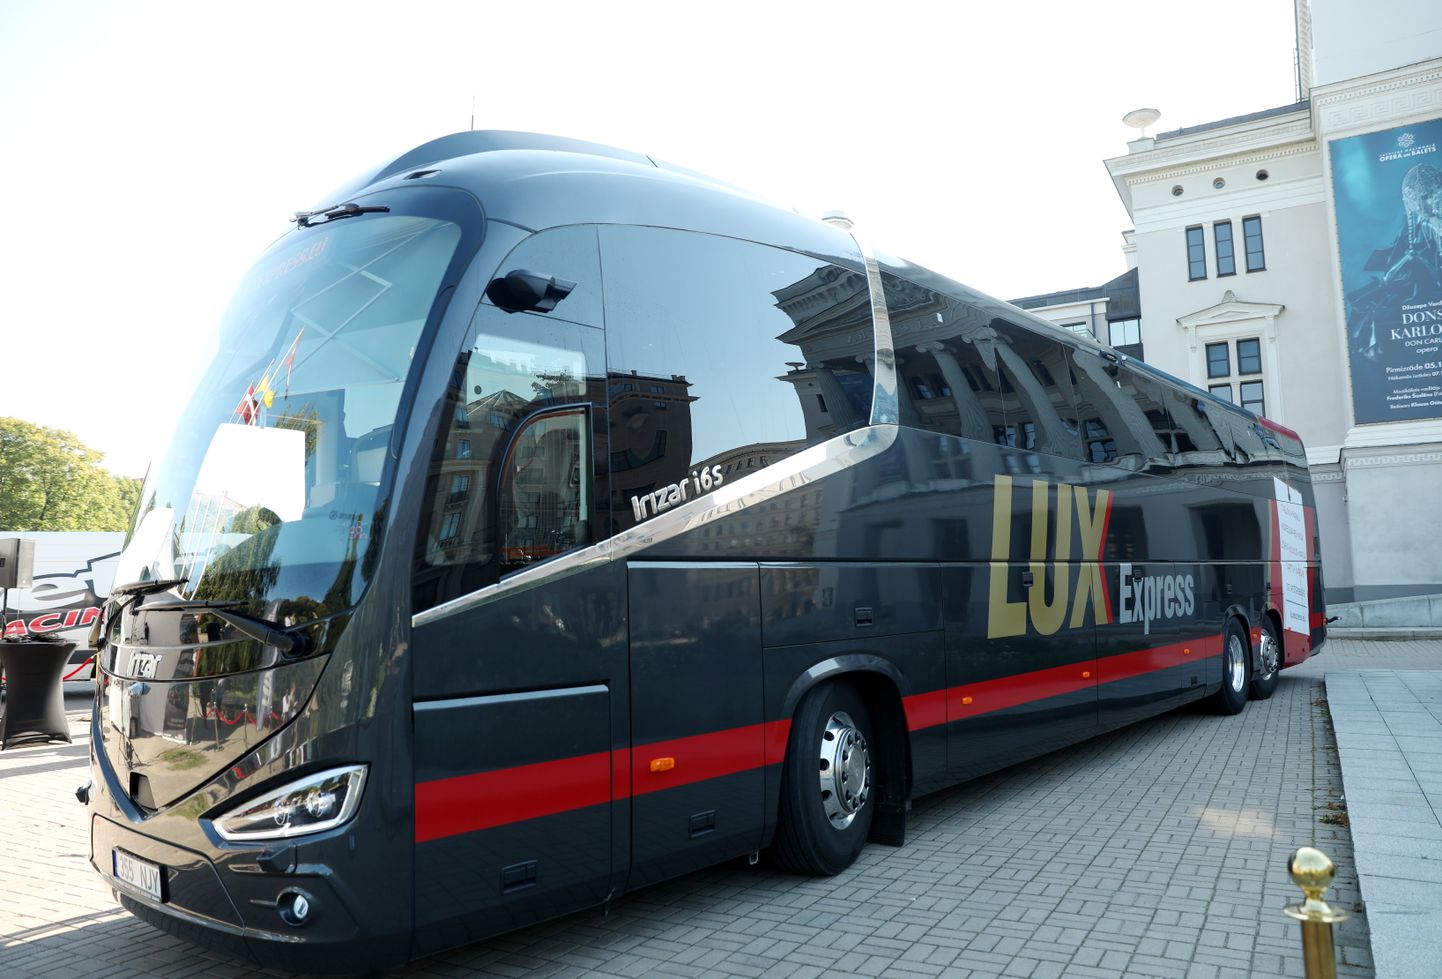 Starptautiskā pasažieru pārvadātāja "Lux Express" jaunais autobuss "Scania Irizar i6S Efficient" prezentācijas pasākuma laikā pie Latvijas Nacionālās operas un baleta ēkas.